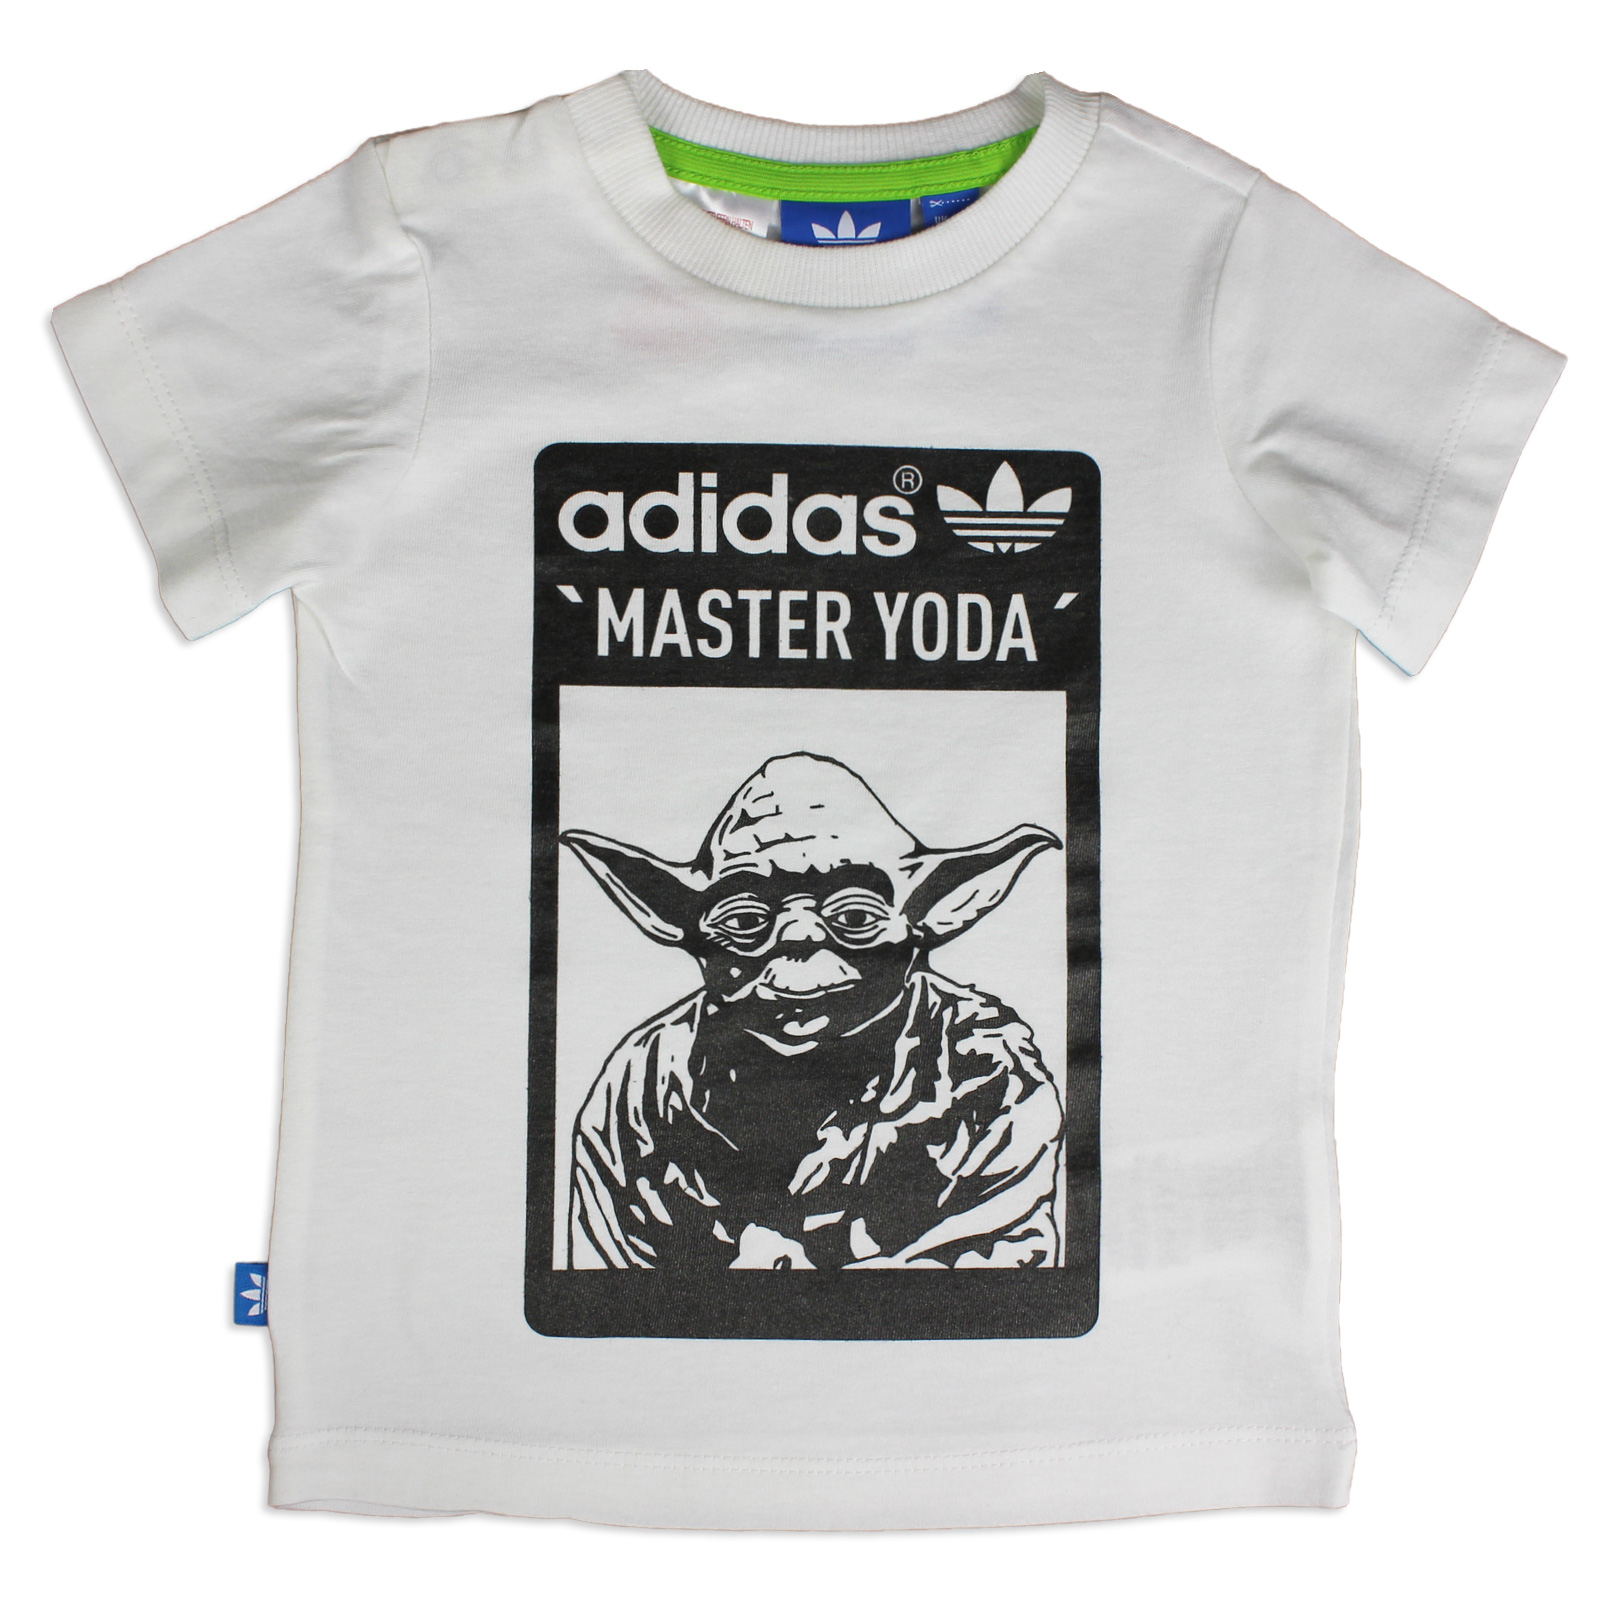 master yoda t shirt